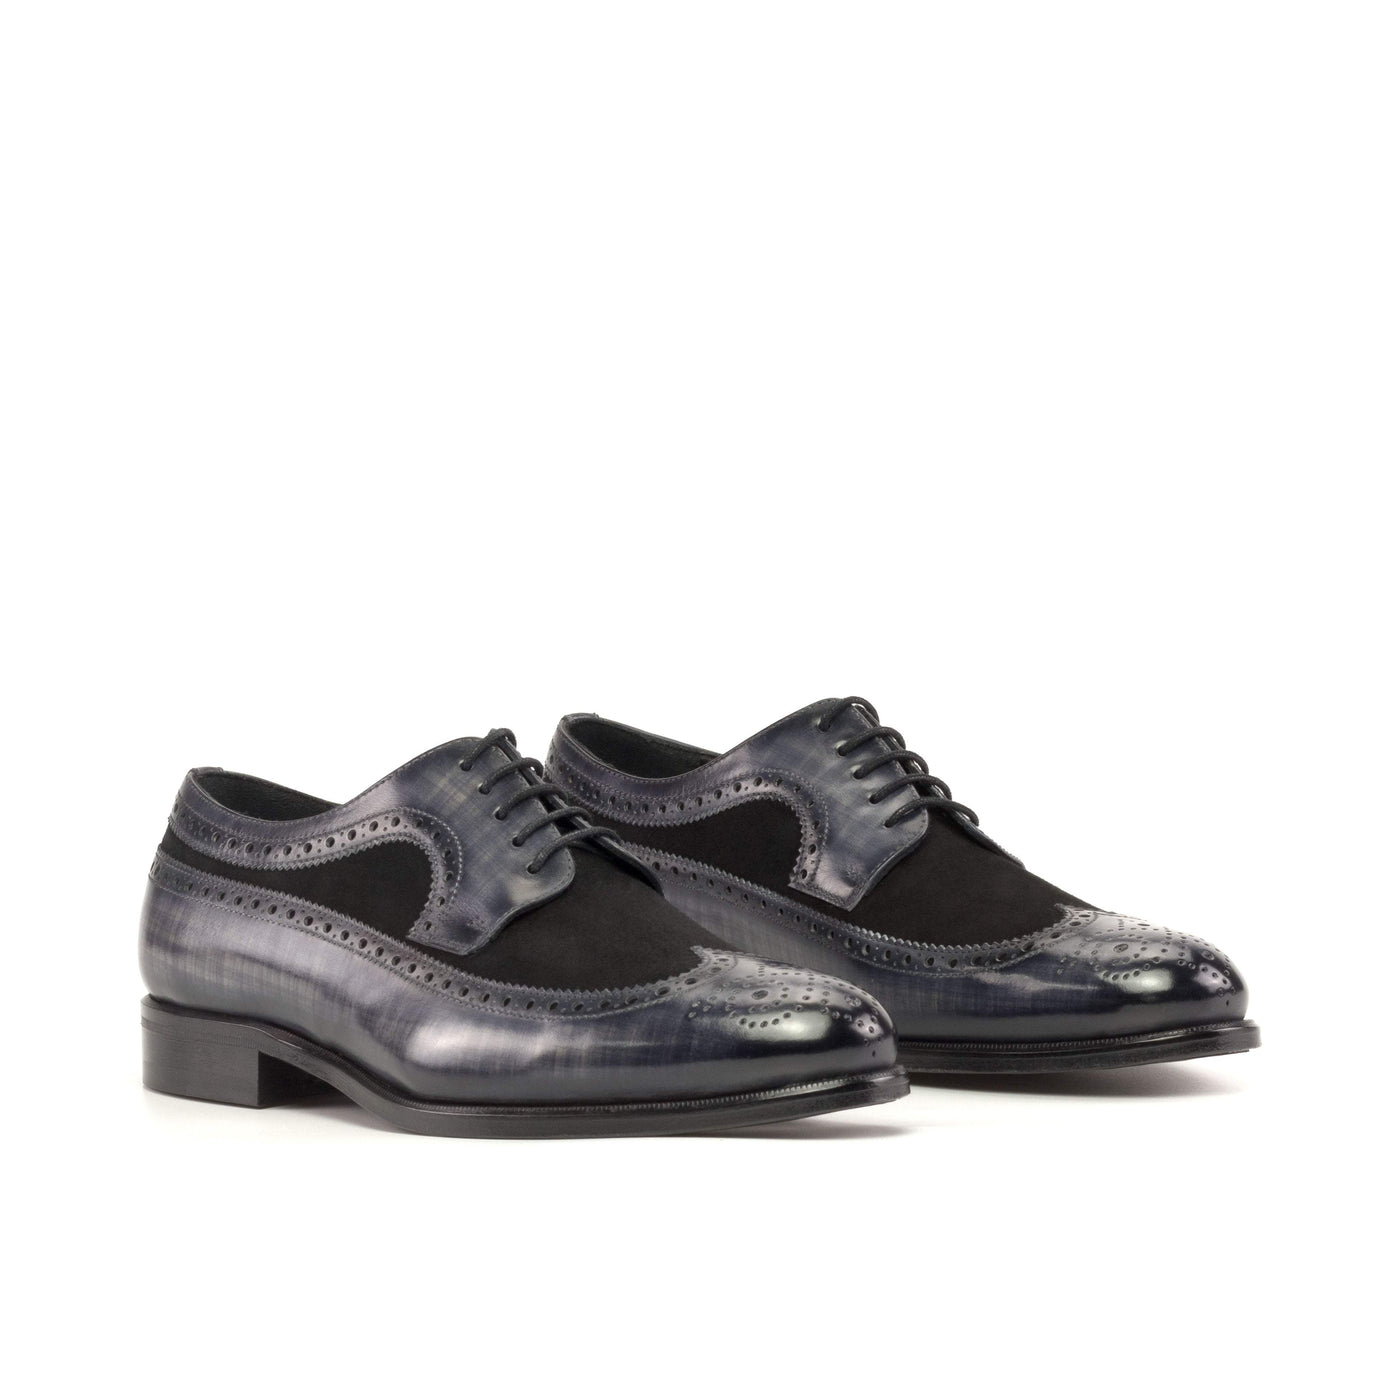 Men's Longwing Blucher Shoes Patina Leather Black Grey 5361 3- MERRIMIUM